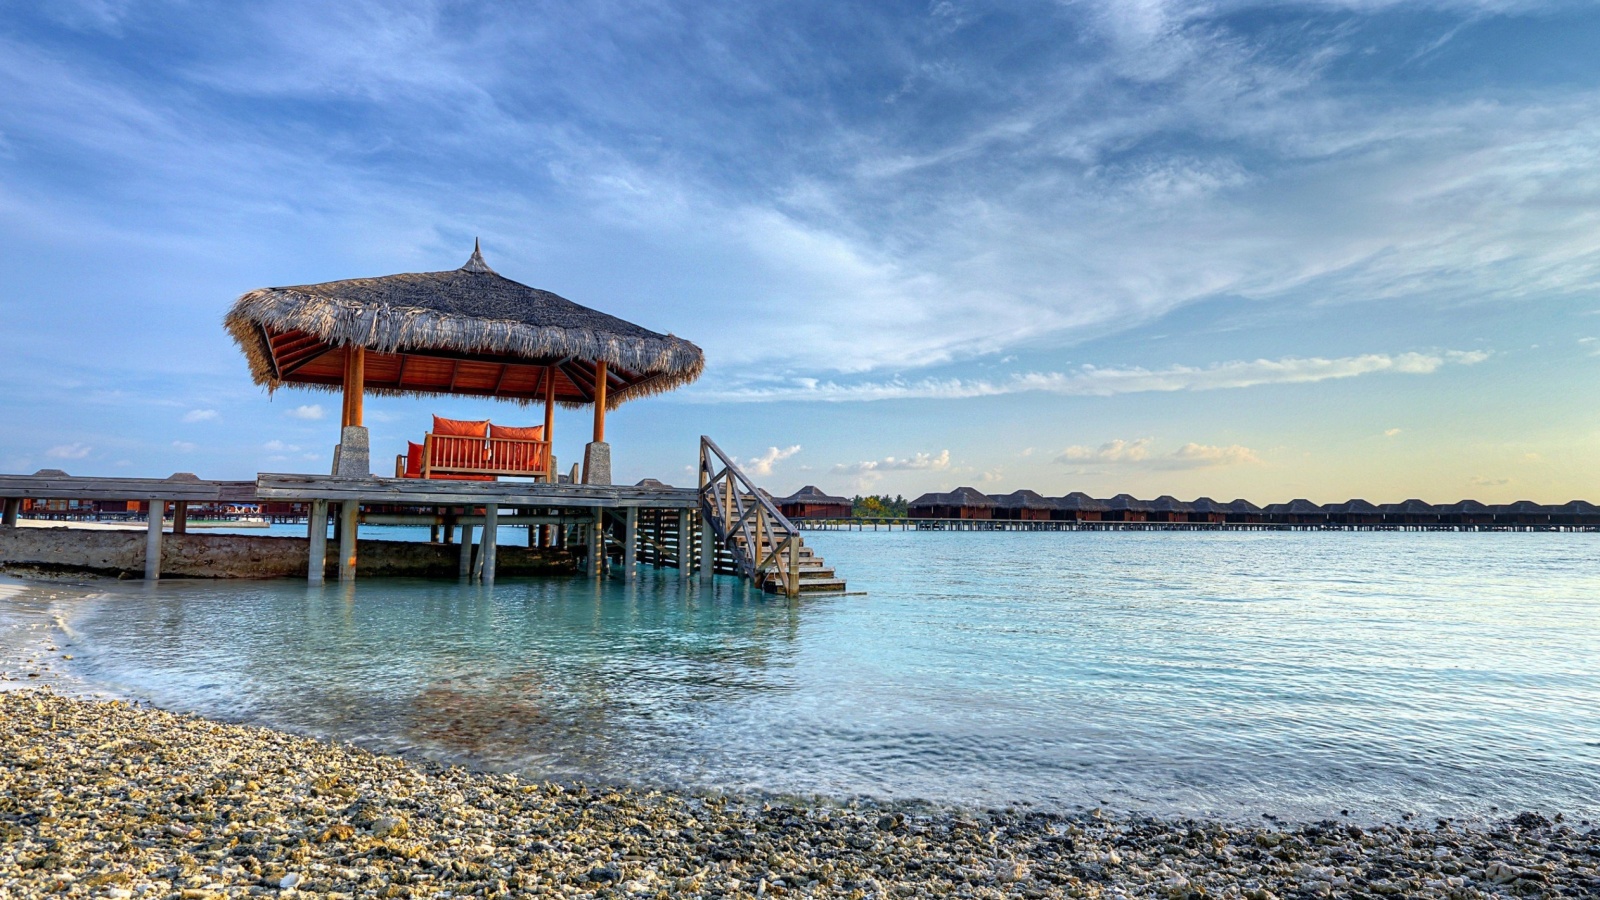 Fondo de pantalla Tropical Maldives Resort good Destination 1600x900